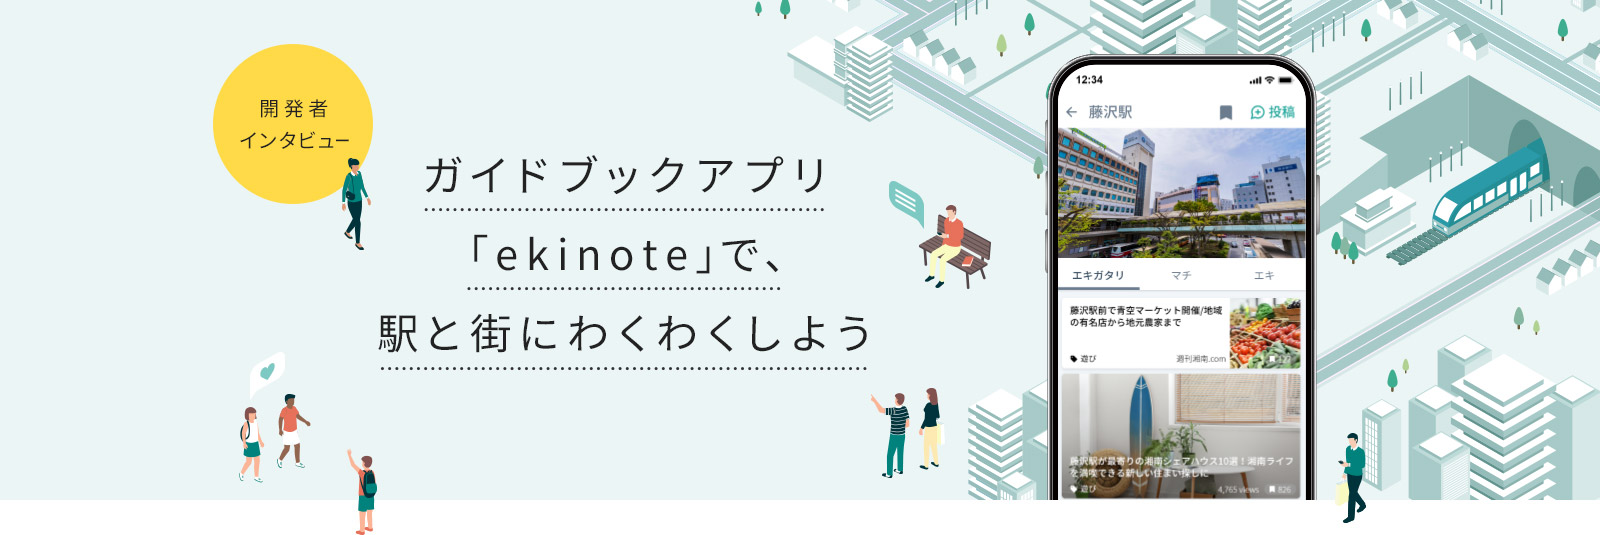 ガイドブックアプリ「ekinote」で、駅と街にわくわくしよう